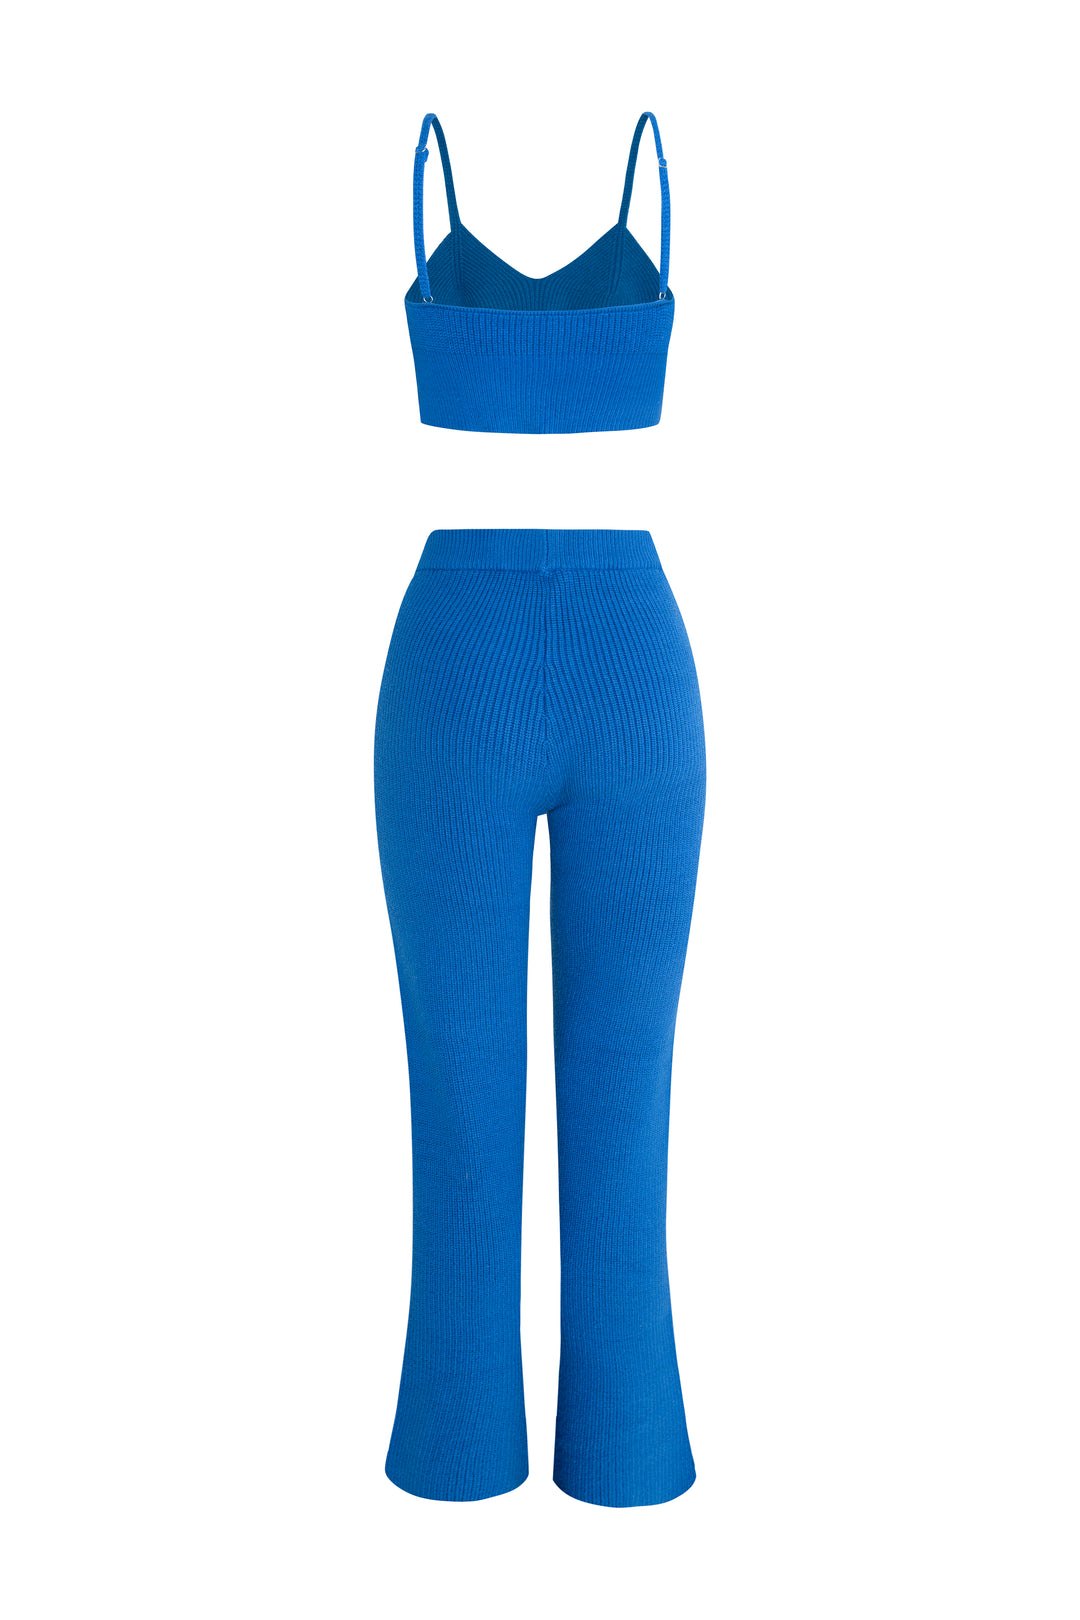 Bleu - Ensemble pantalon tricoté à ourlet fendu « Automne », pull court à double fermeture éclair et ensemble de vêtements d'intérieur brassière